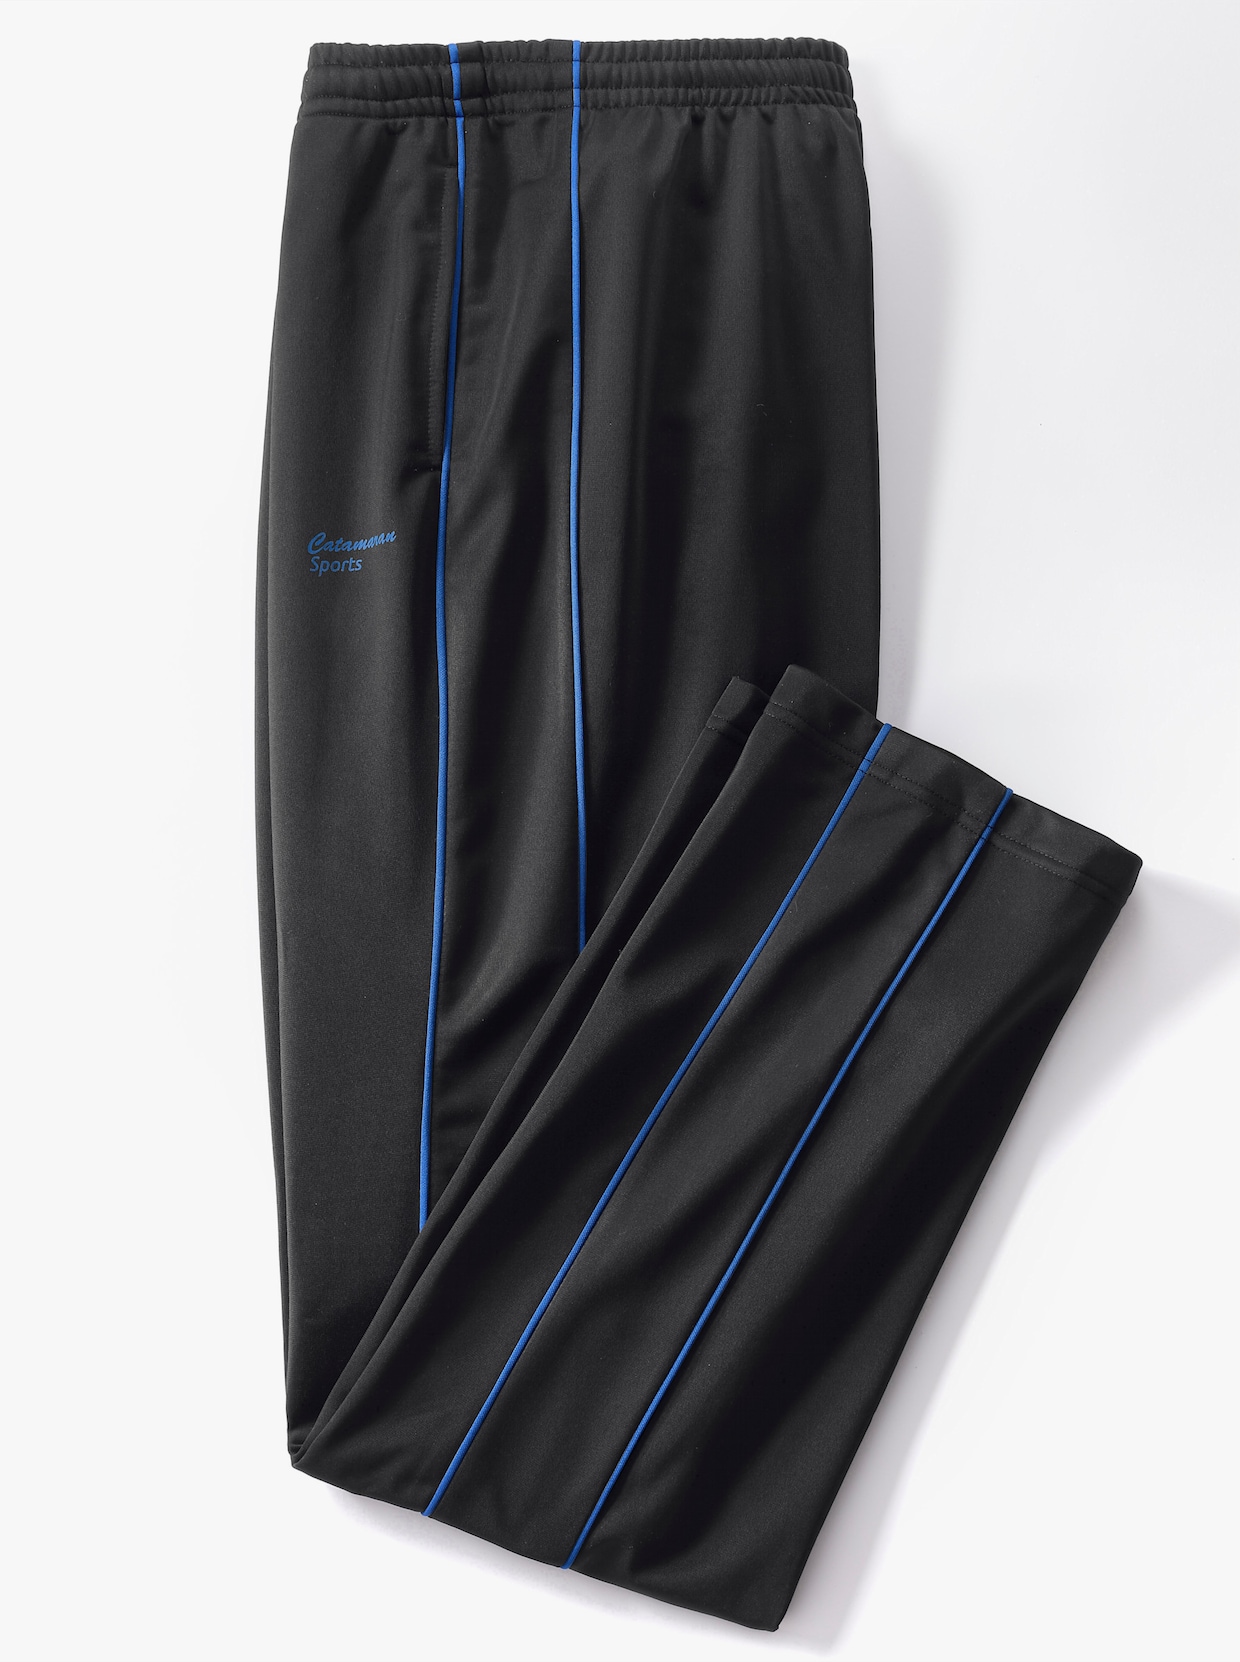 Catamaran Sports Kalhoty pro volný čas - černá-královská modrá